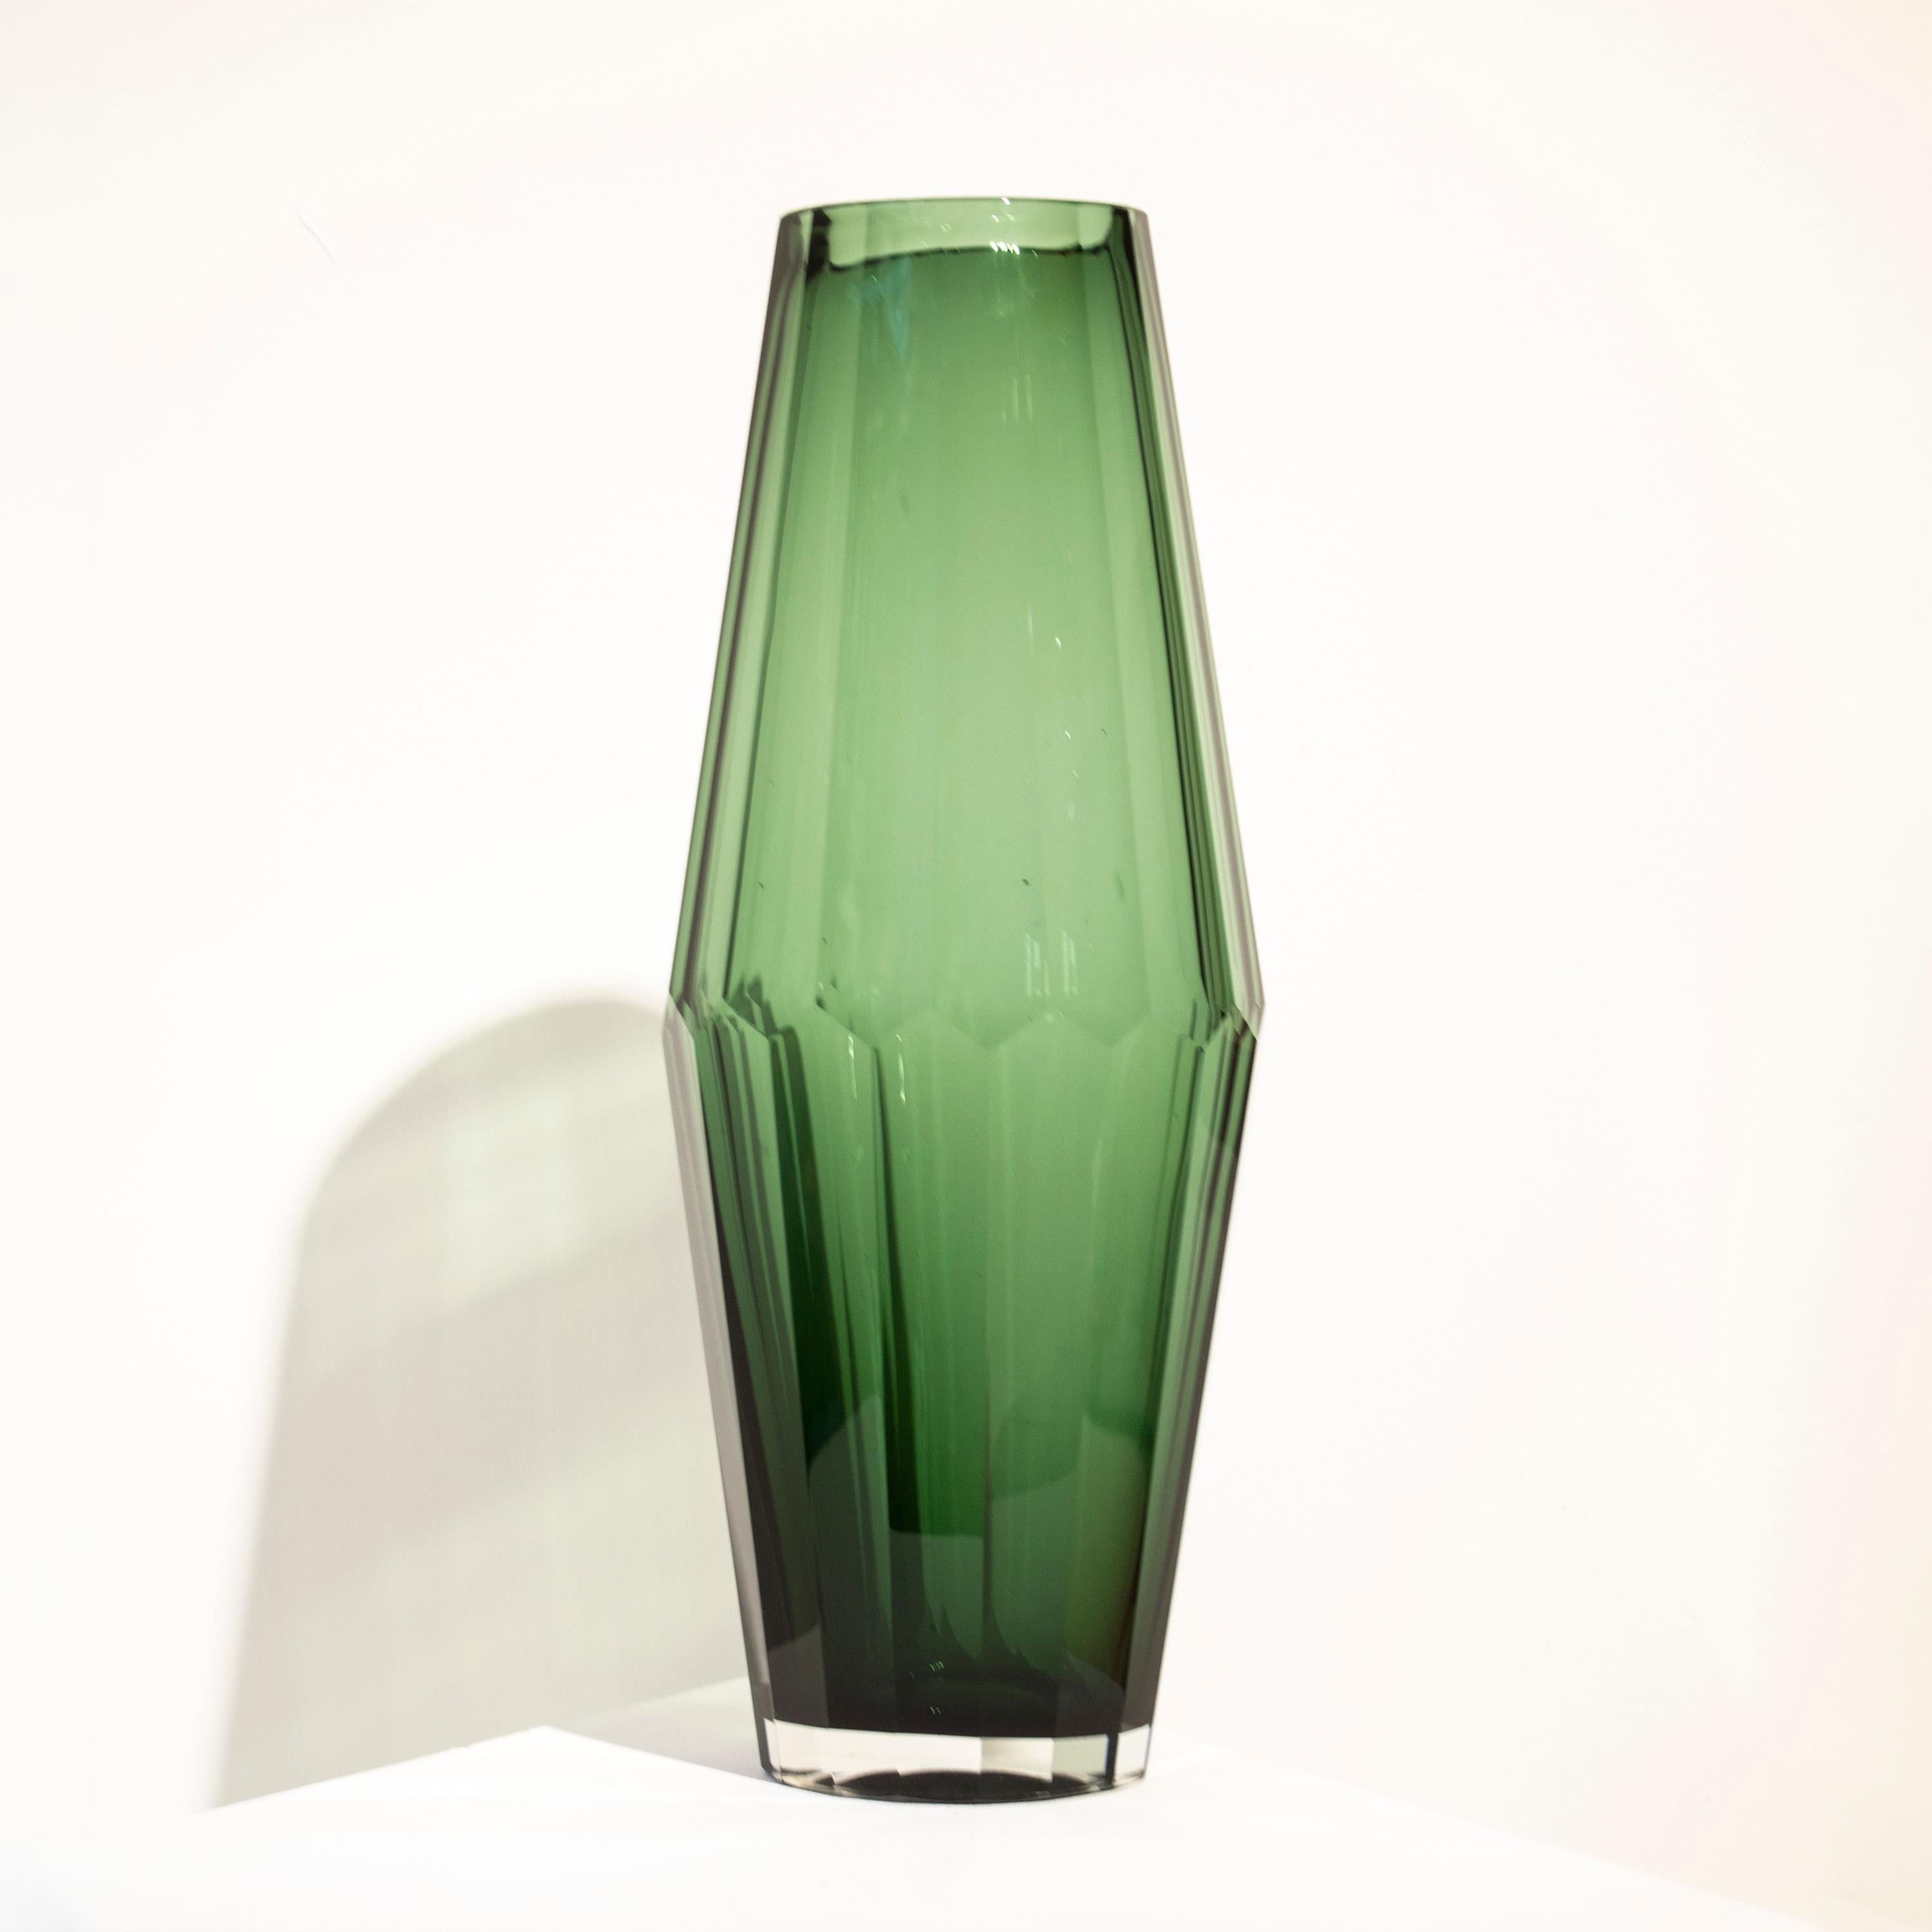 Vase en verre semi-transparent vert italien soufflé à la main, de forme facettée.